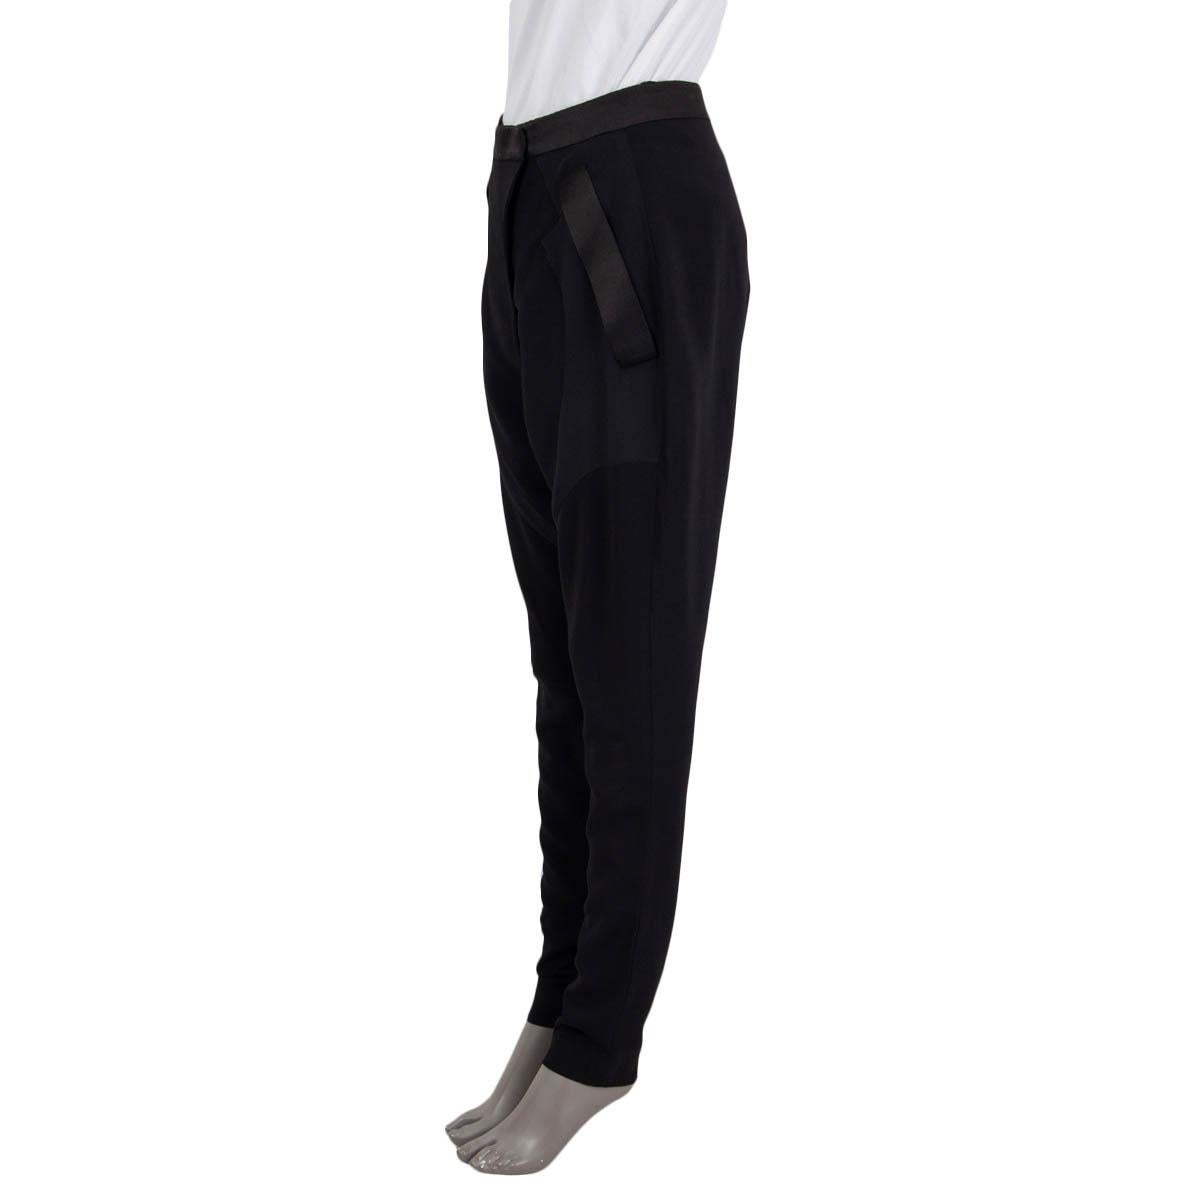 100% authentique Pantalon de jodhpur d'inspiration équestre Givenchy en viscose (95%) et élasthanne (5%) noirs avec détails en satin noir en soie (100%). Ce modèle comporte deux poches fendues sur le côté, des fermetures éclair aux poignets, une